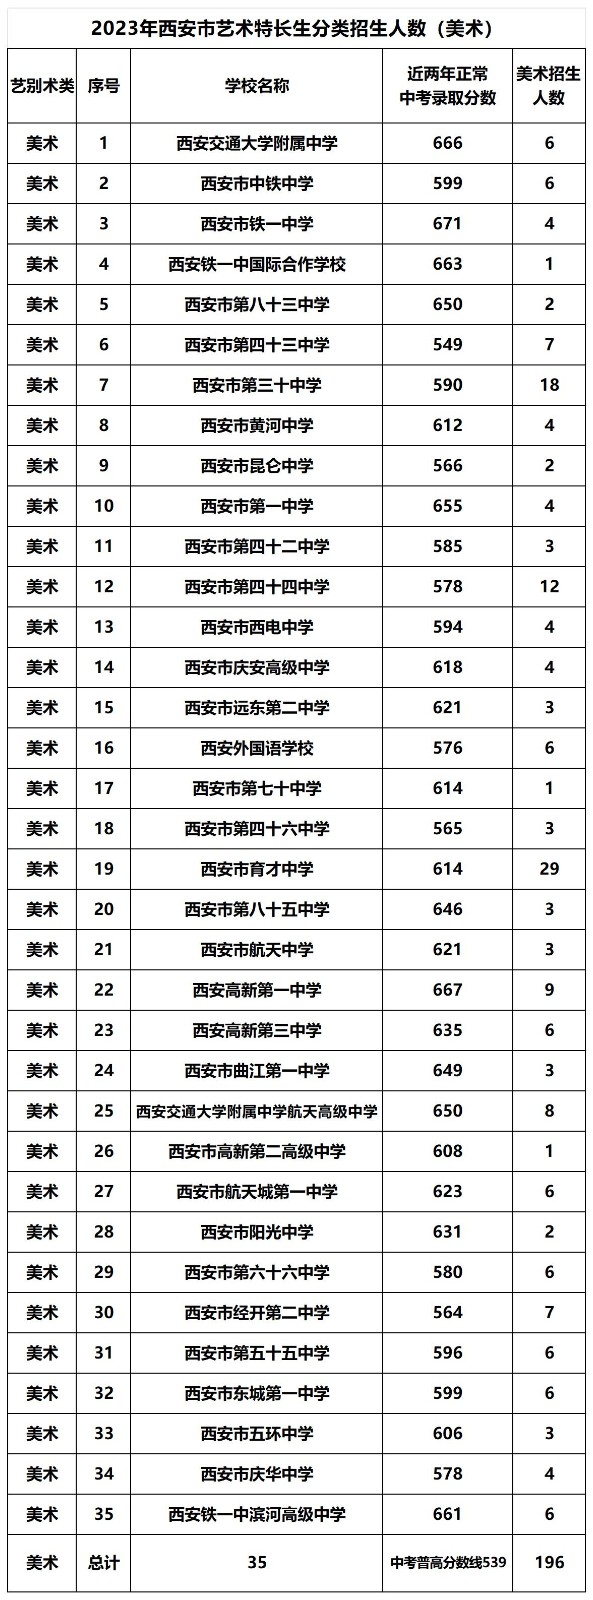 2019考研报名人数：云南省2019年考研报考人数49496人 增幅达26.7%